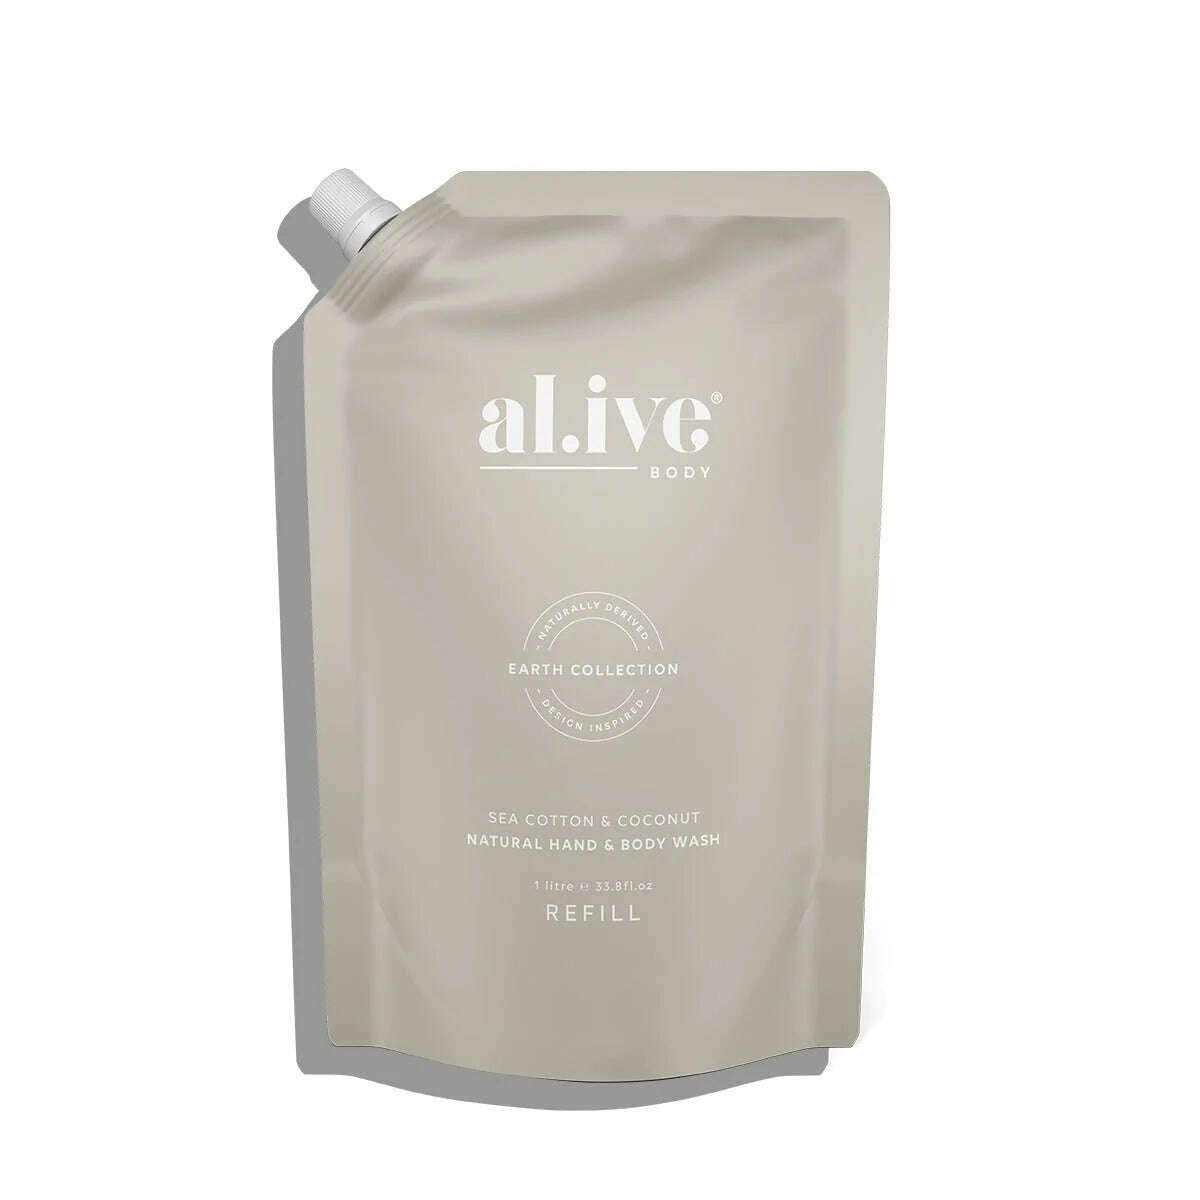 Impodimo Living & Giving:Sea Cotton & Coconut Wash - Refill:Alive Body